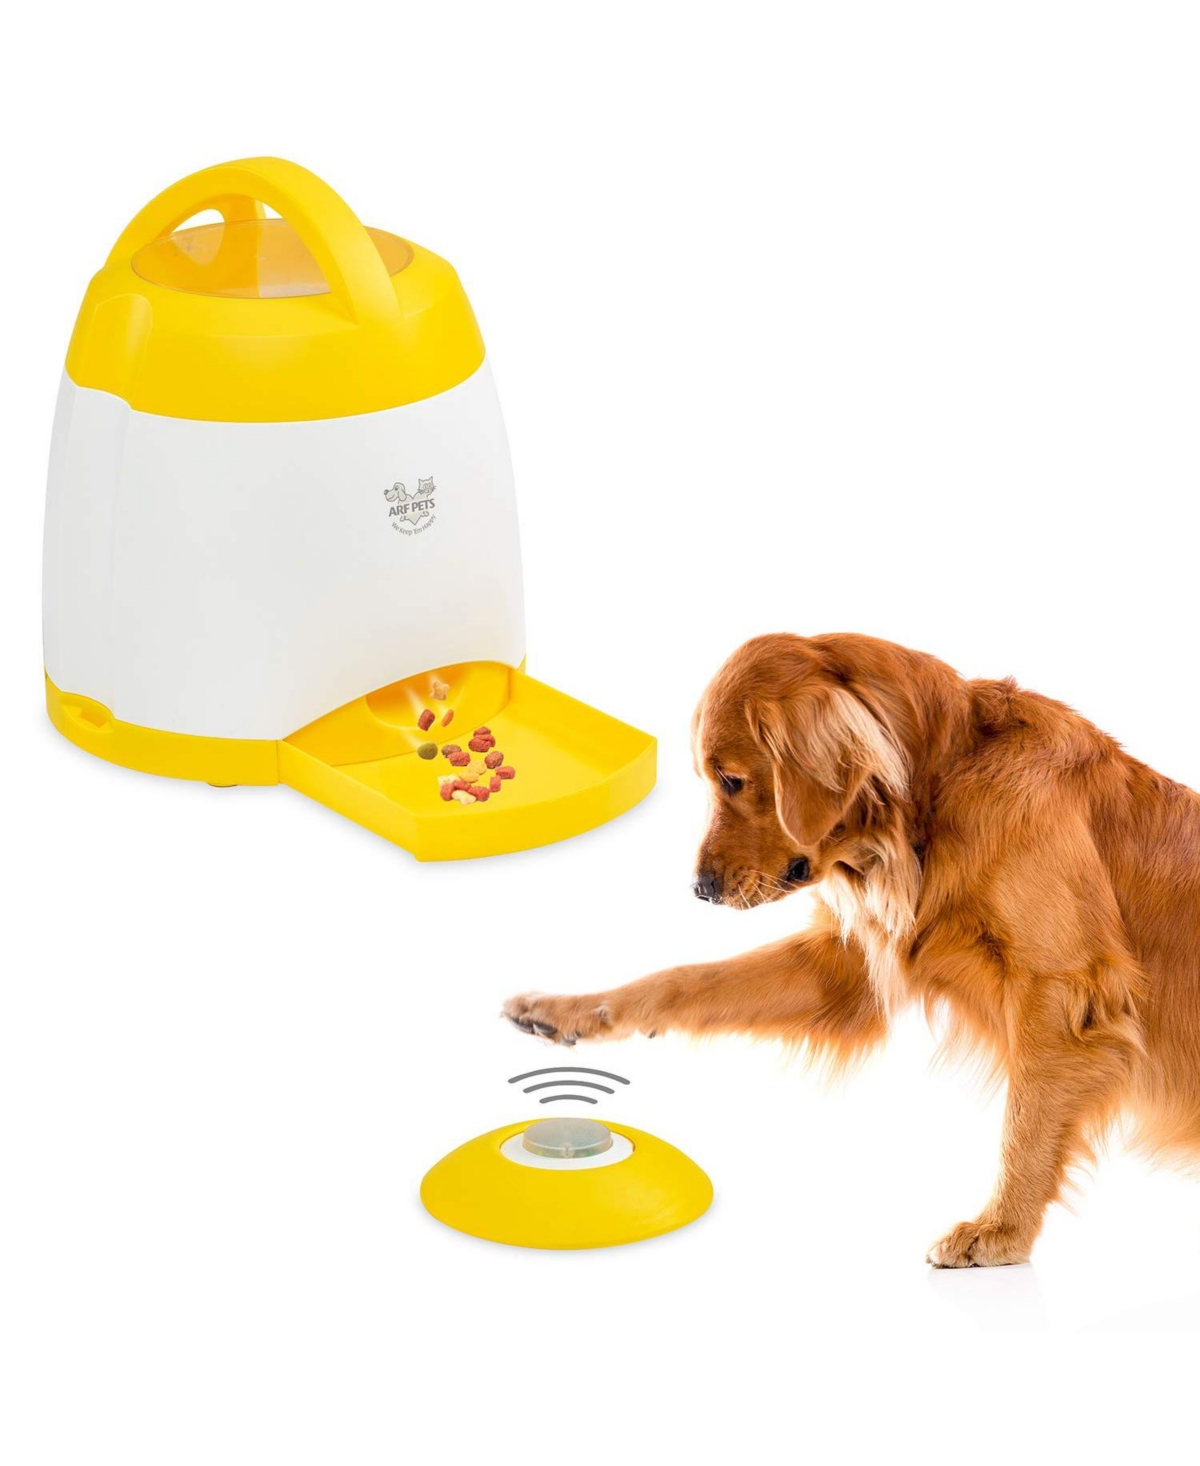 Dog Treat Food Dispenser, Dog Memory Training Activity Toy - White